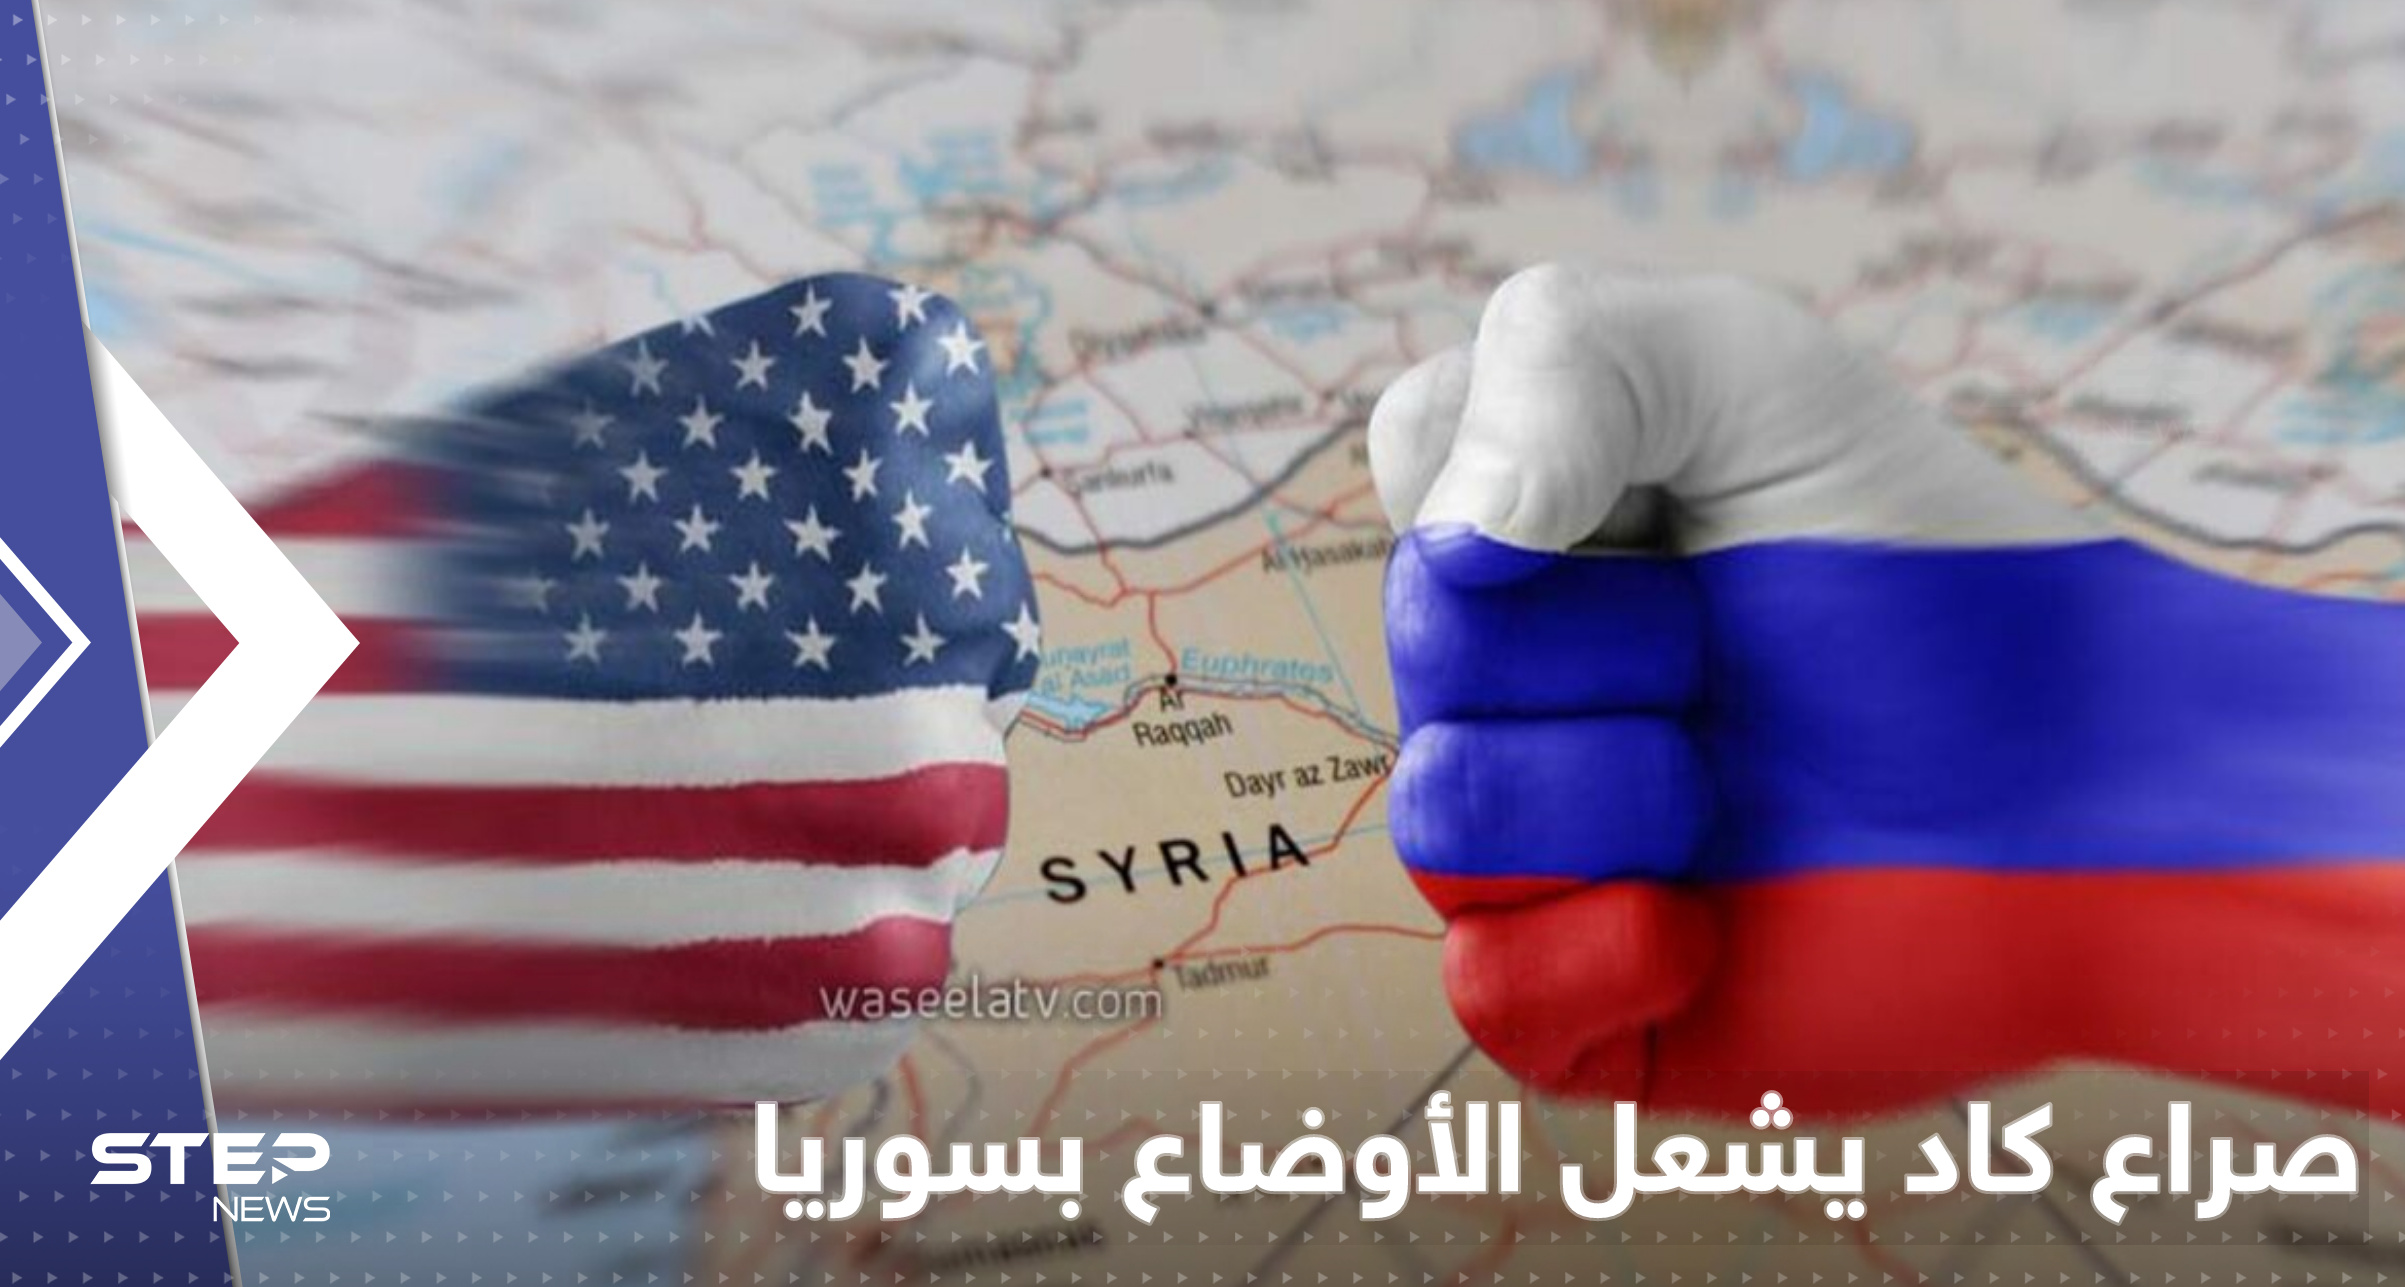 لحظات فصلت عن انفجار الأوضاع بسوريا.. موسكو تكشف ما حدث بين طائرات روسية وأمريكية 